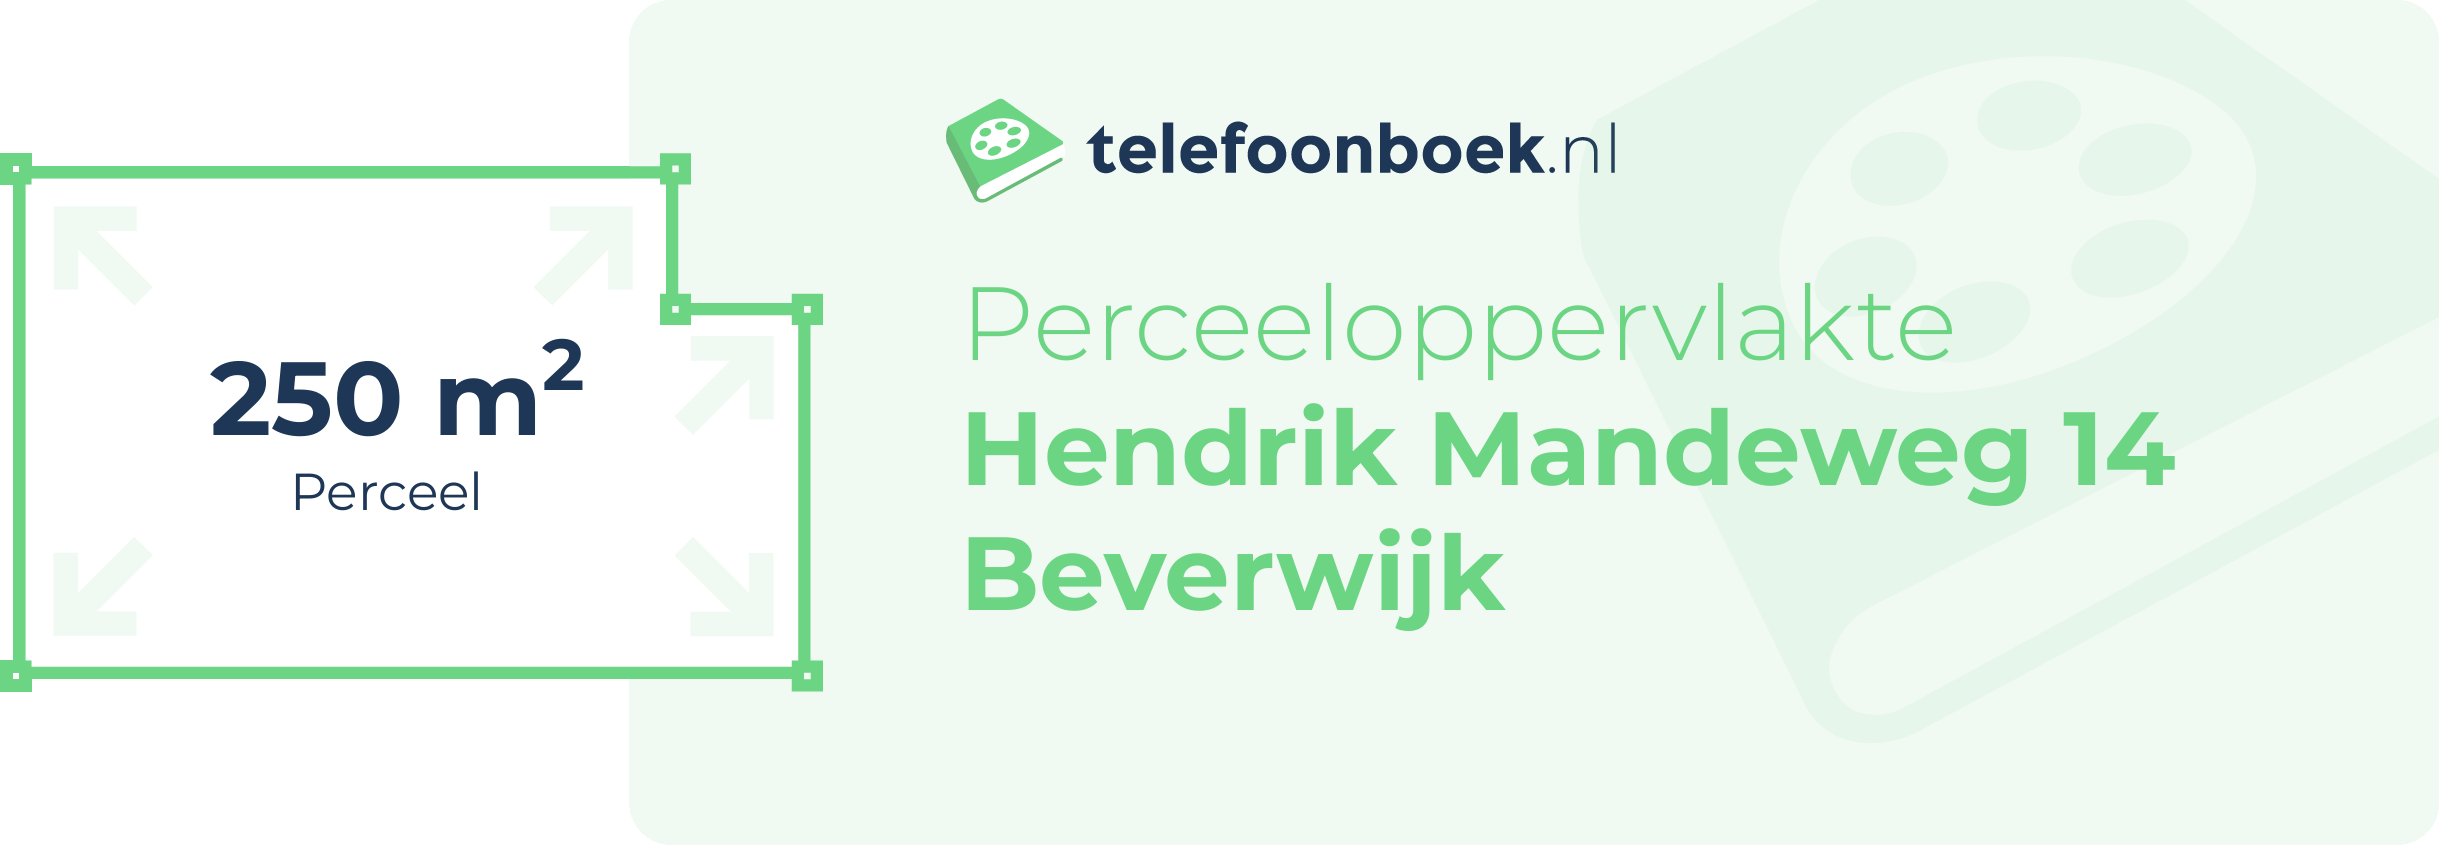 Perceeloppervlakte Hendrik Mandeweg 14 Beverwijk